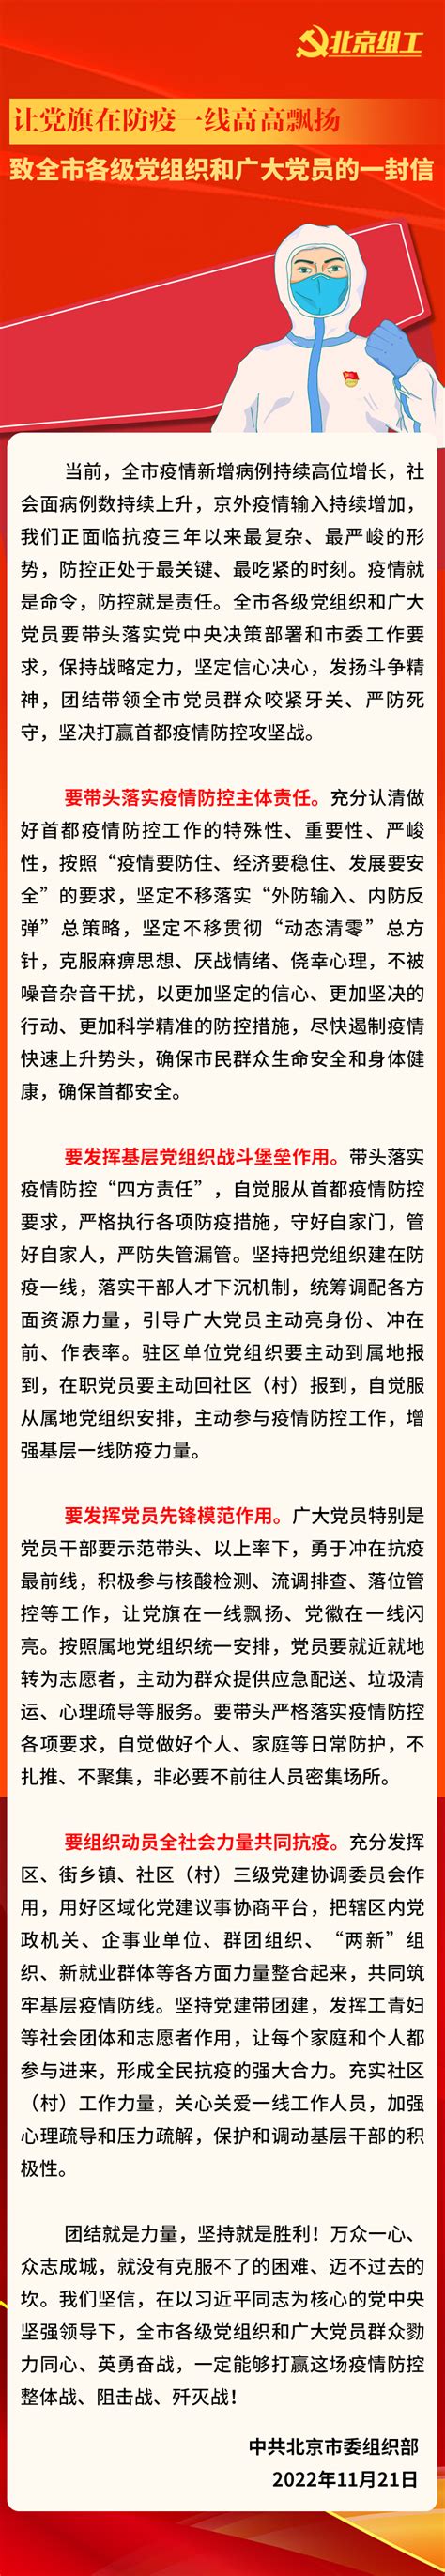 致全市各级党组织和广大党员的一封信-北京光学学会网站